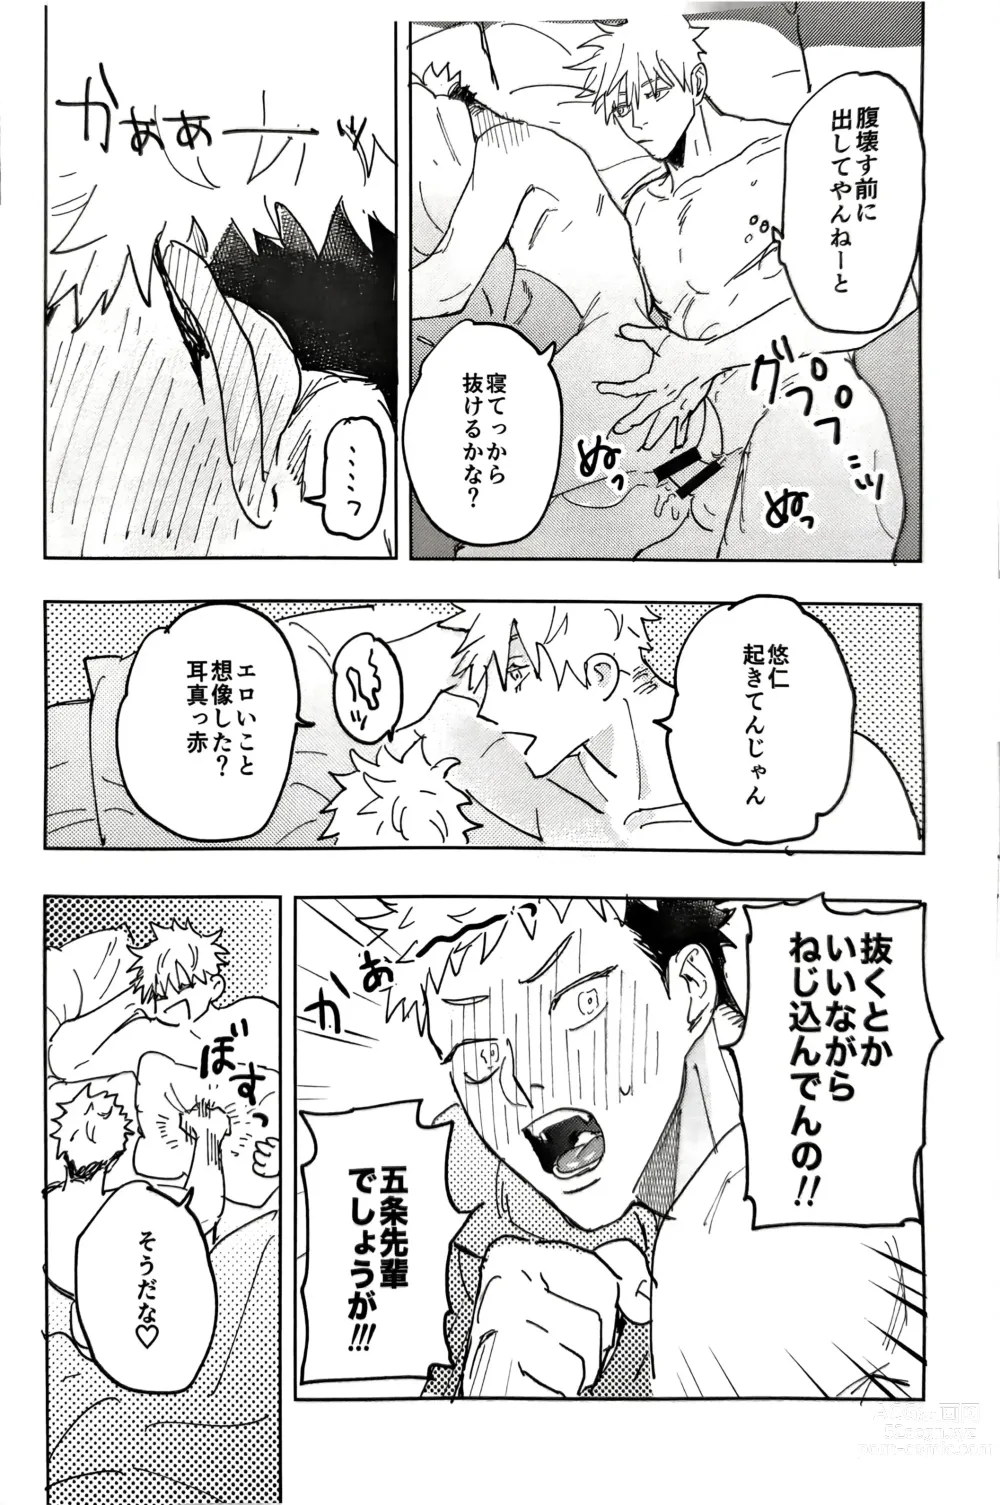 Page 27 of doujinshi Sore ga Aitte Yatsu desho - the prostate orgasm